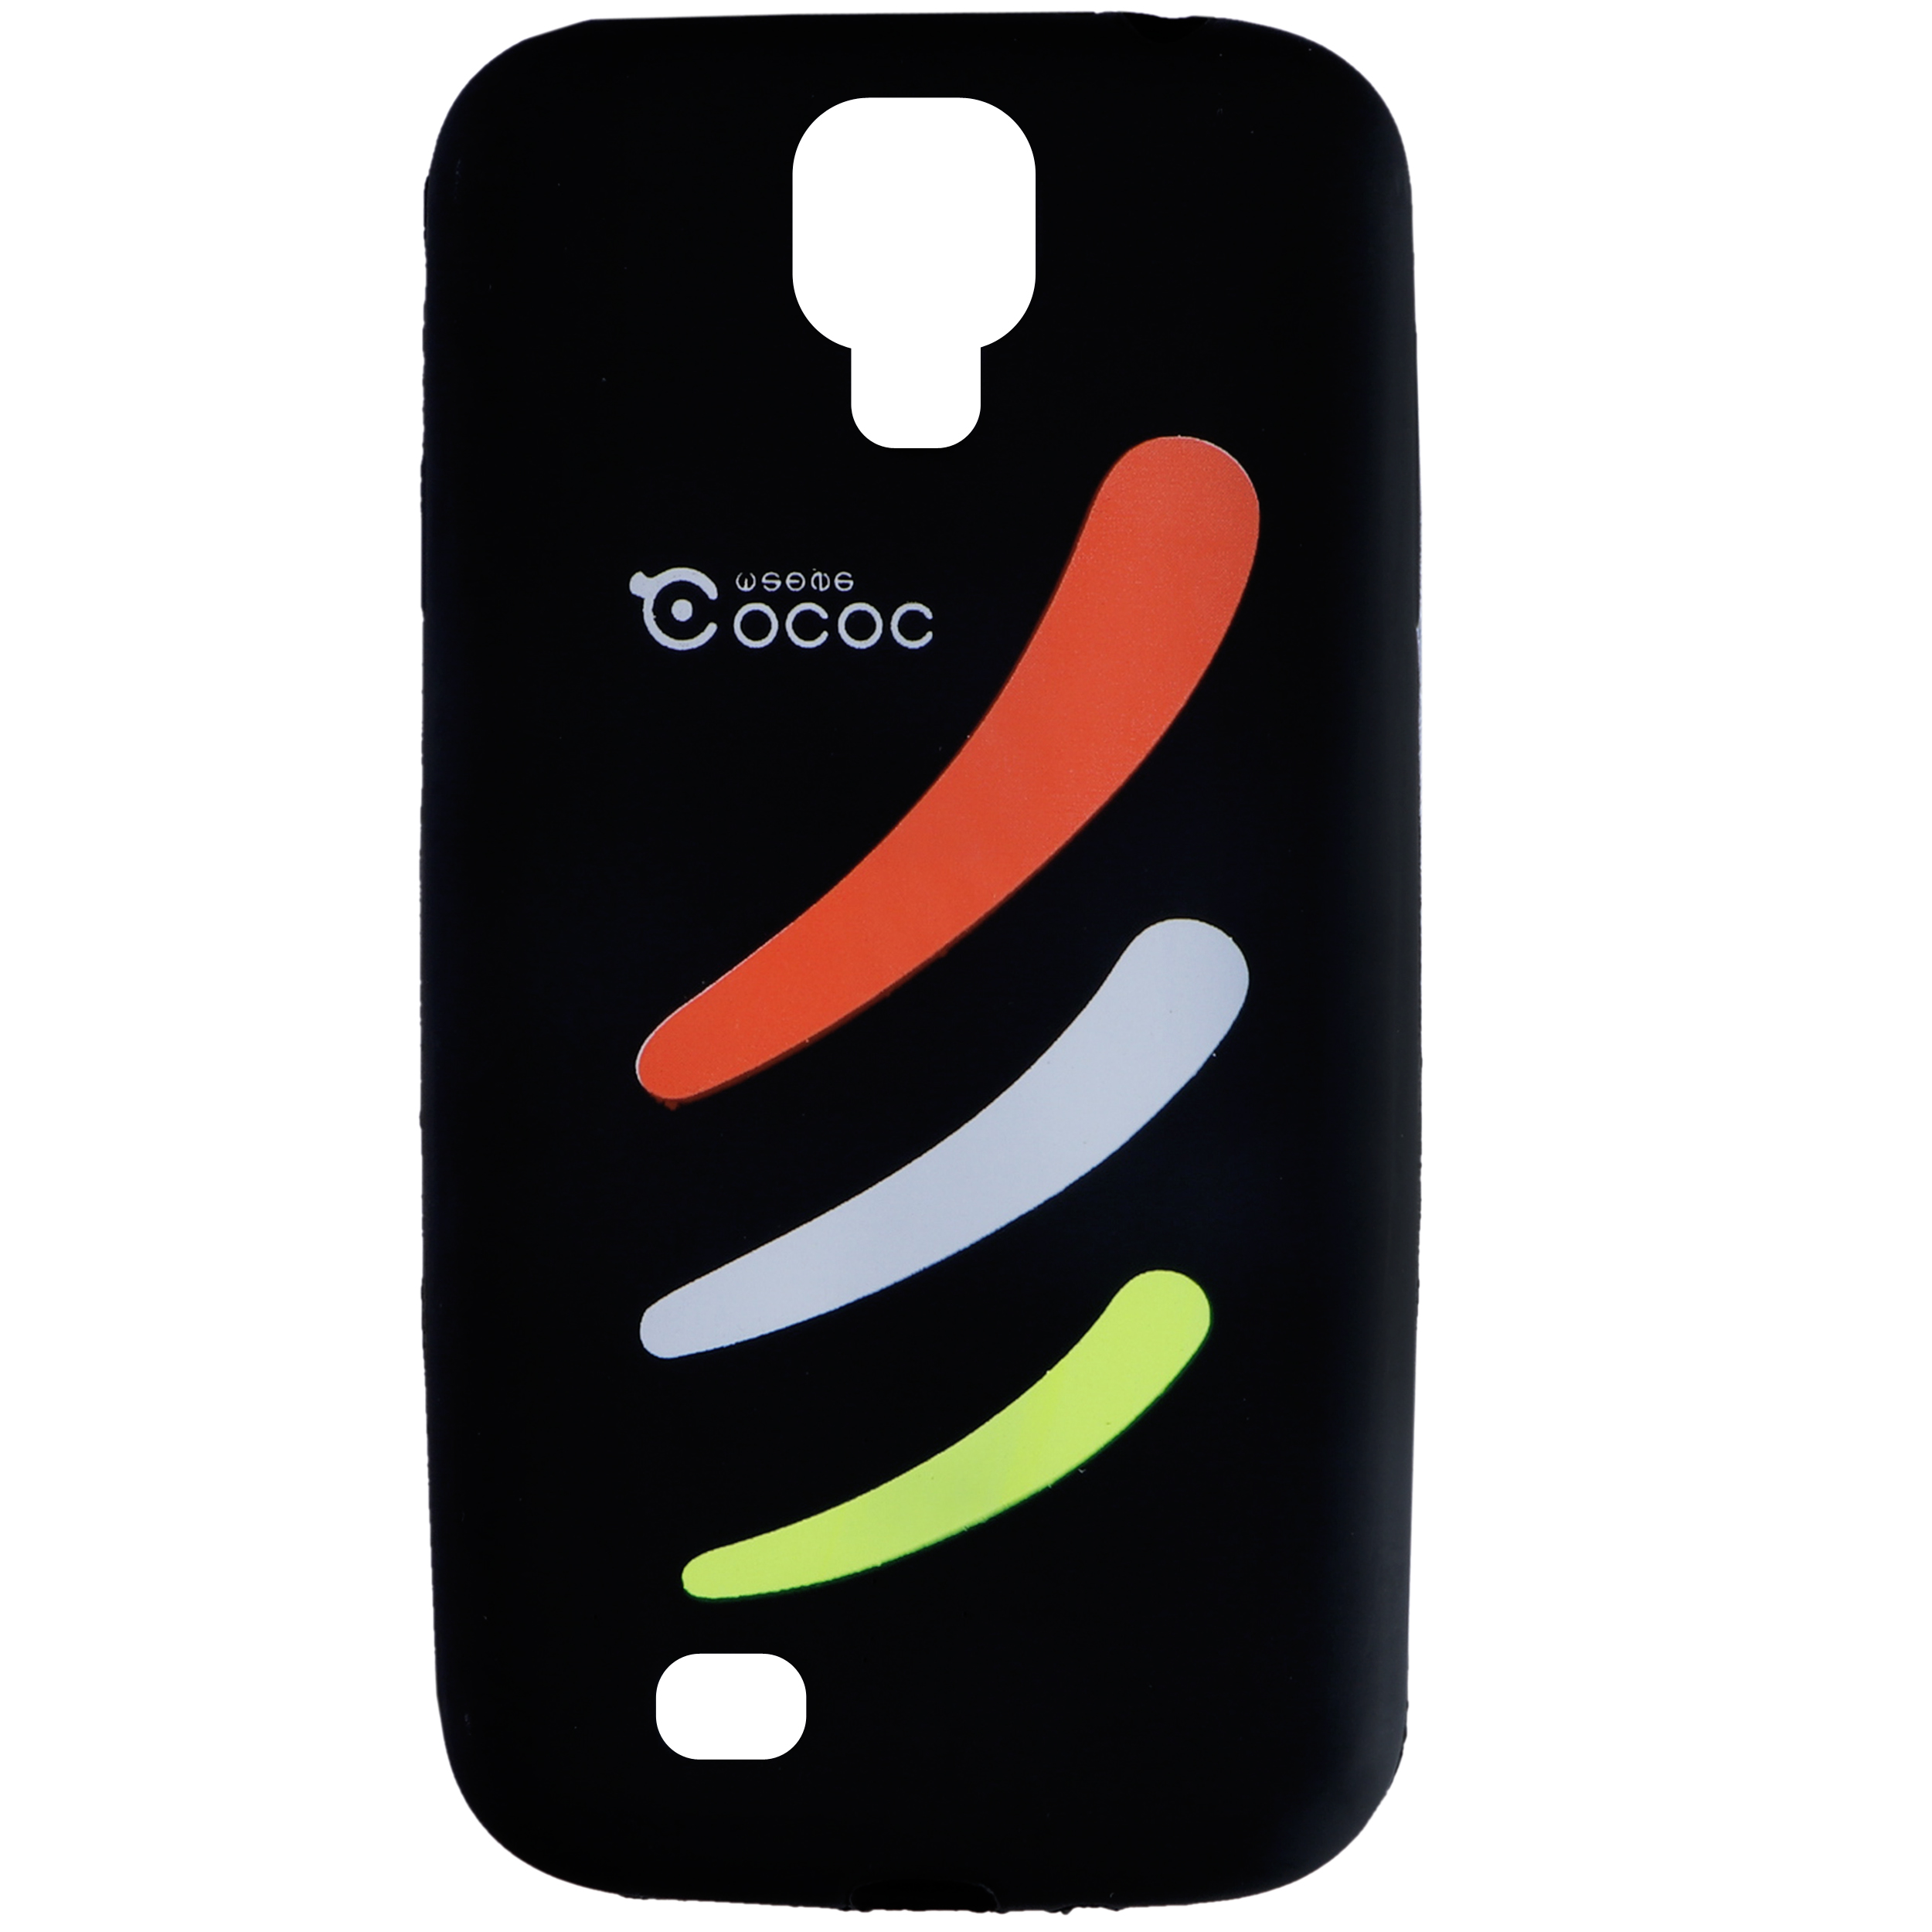 کاور کوکوک مدل F11 مناسب برای گوشی موبایل سامسونگ Galaxy S4